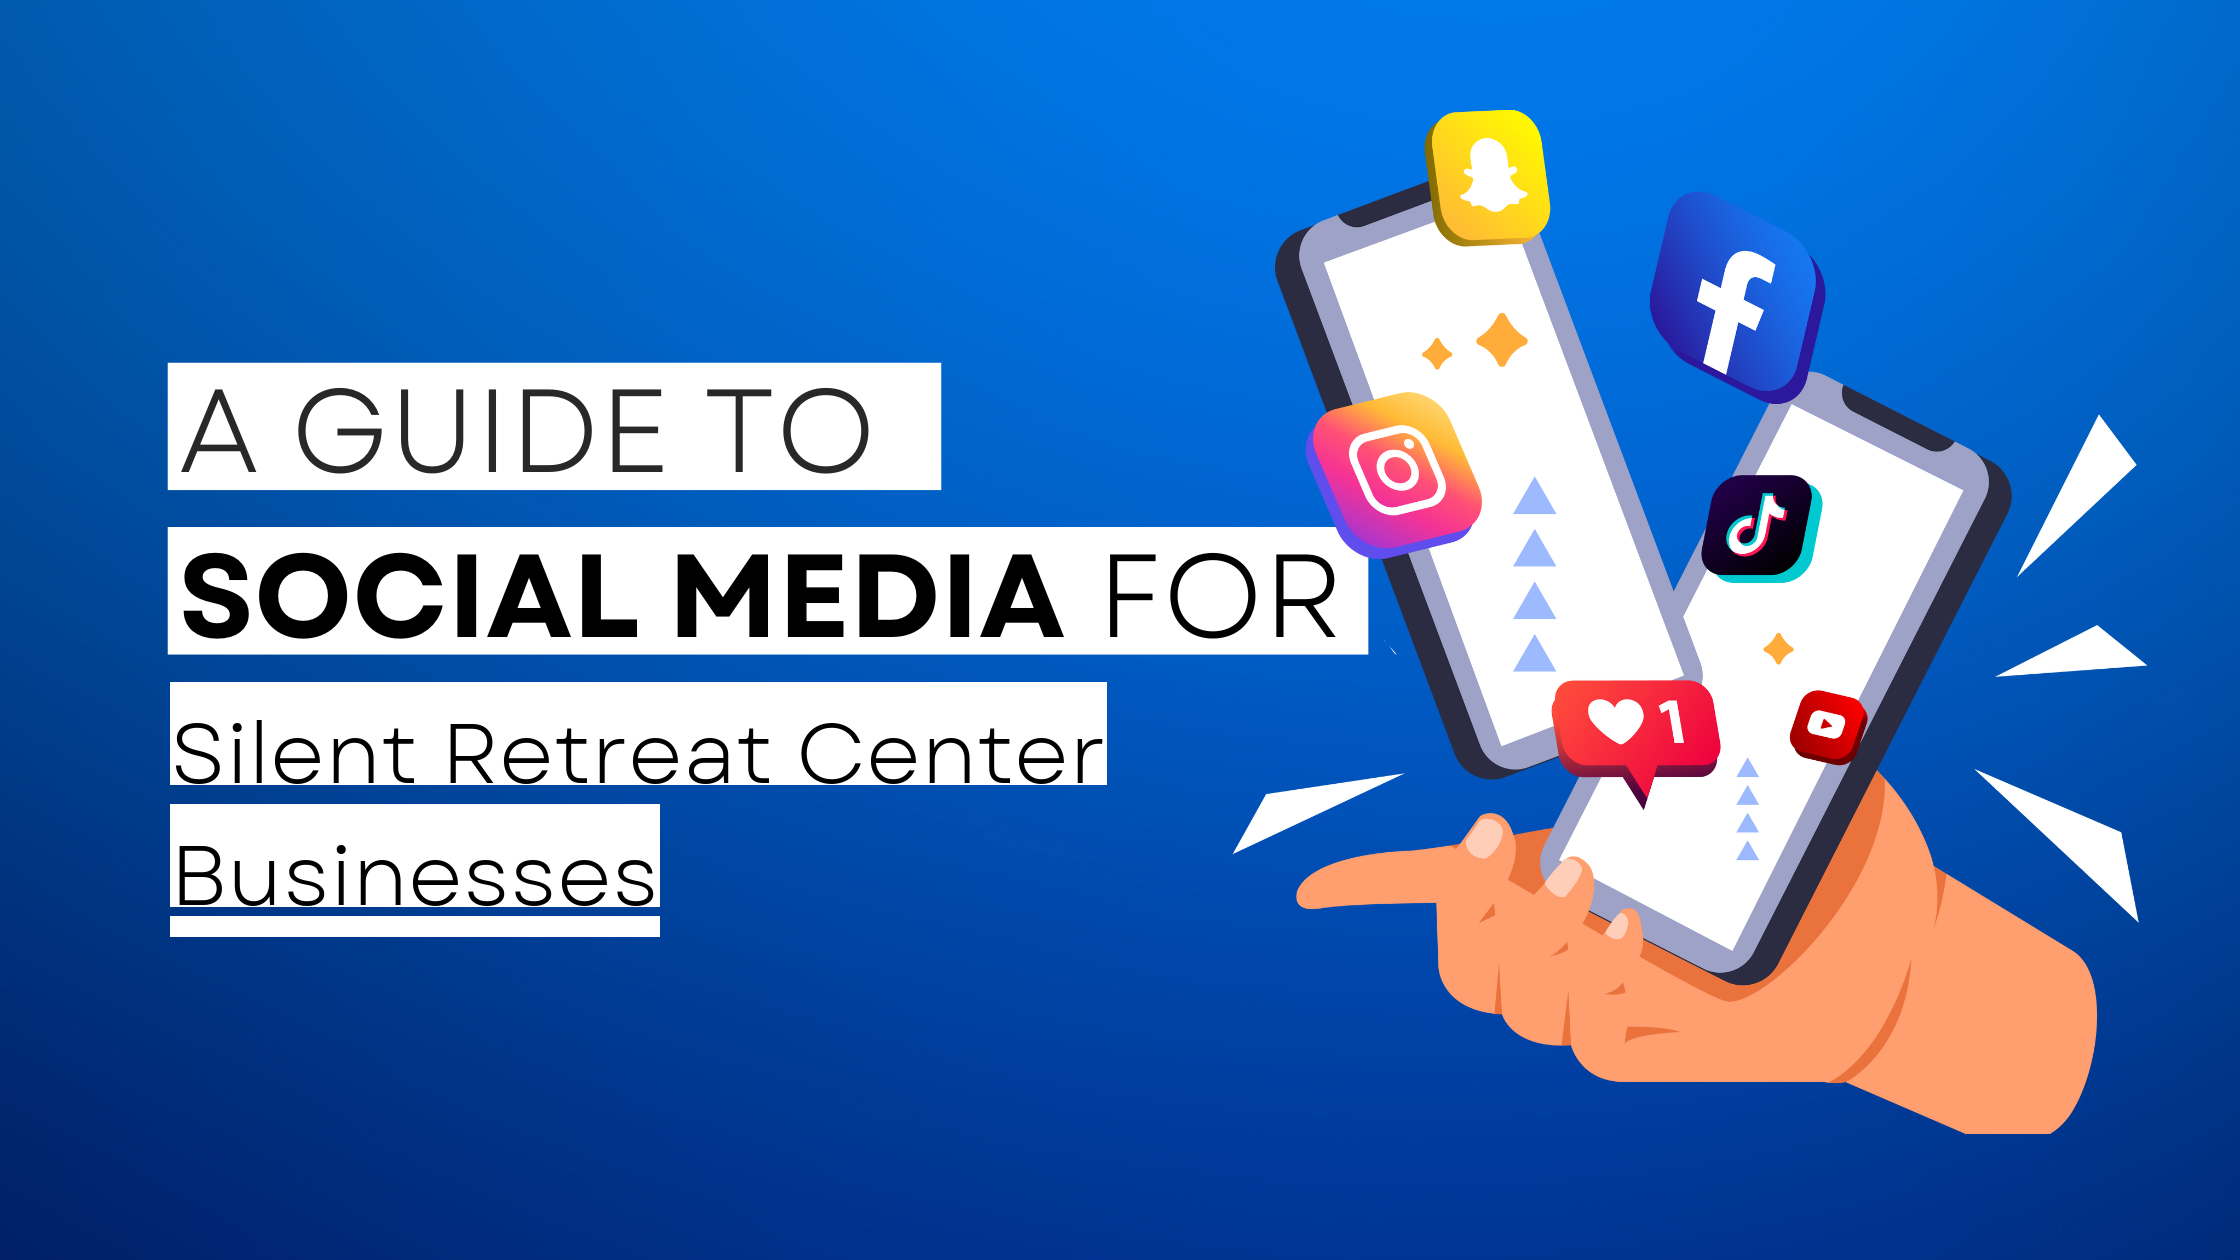 How to start Silent Retreat Center on social media